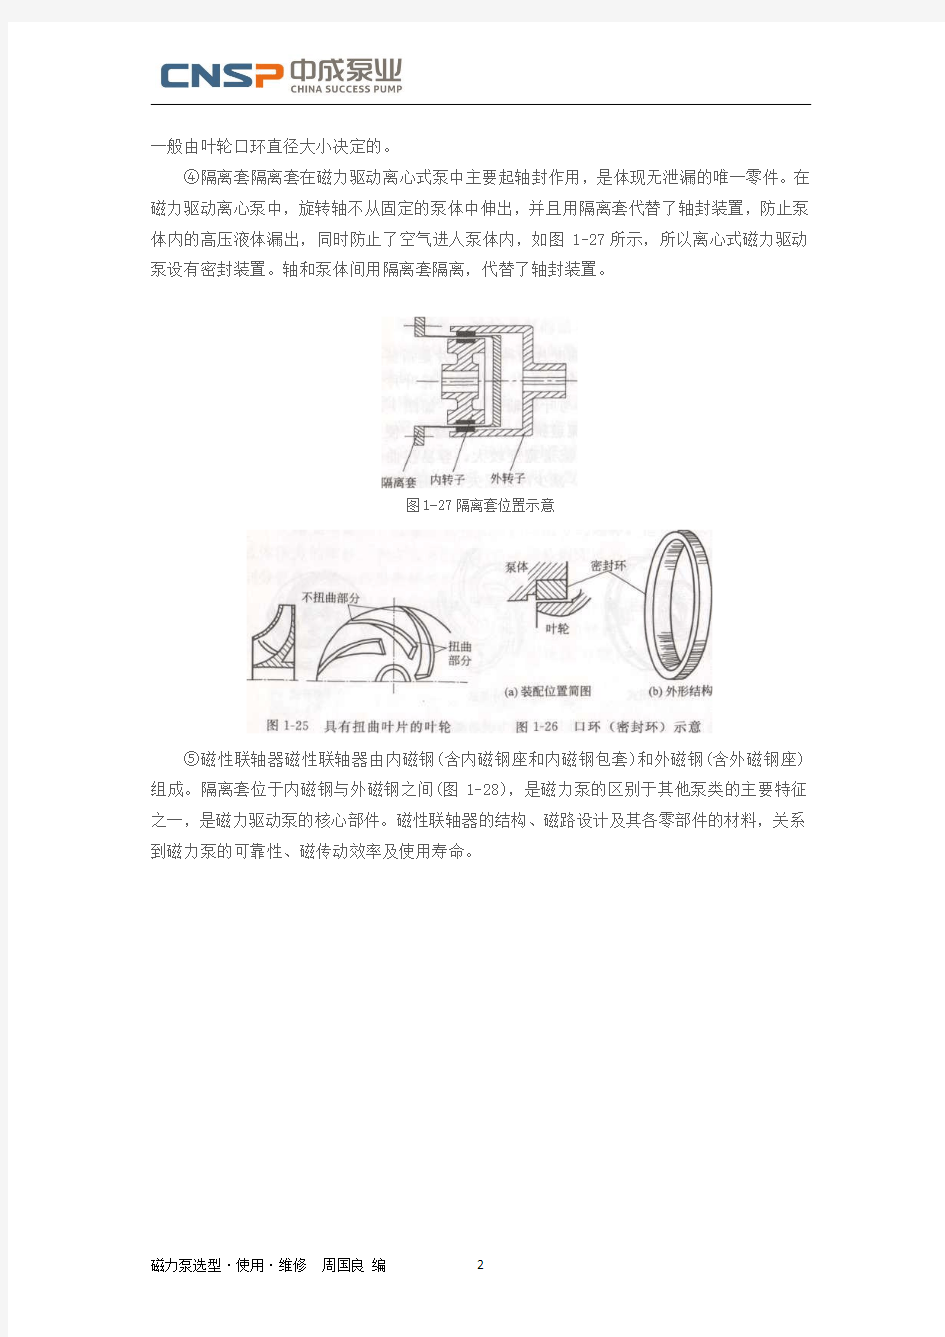 金属磁力驱动离心泵的主要零部件及其作用(中)